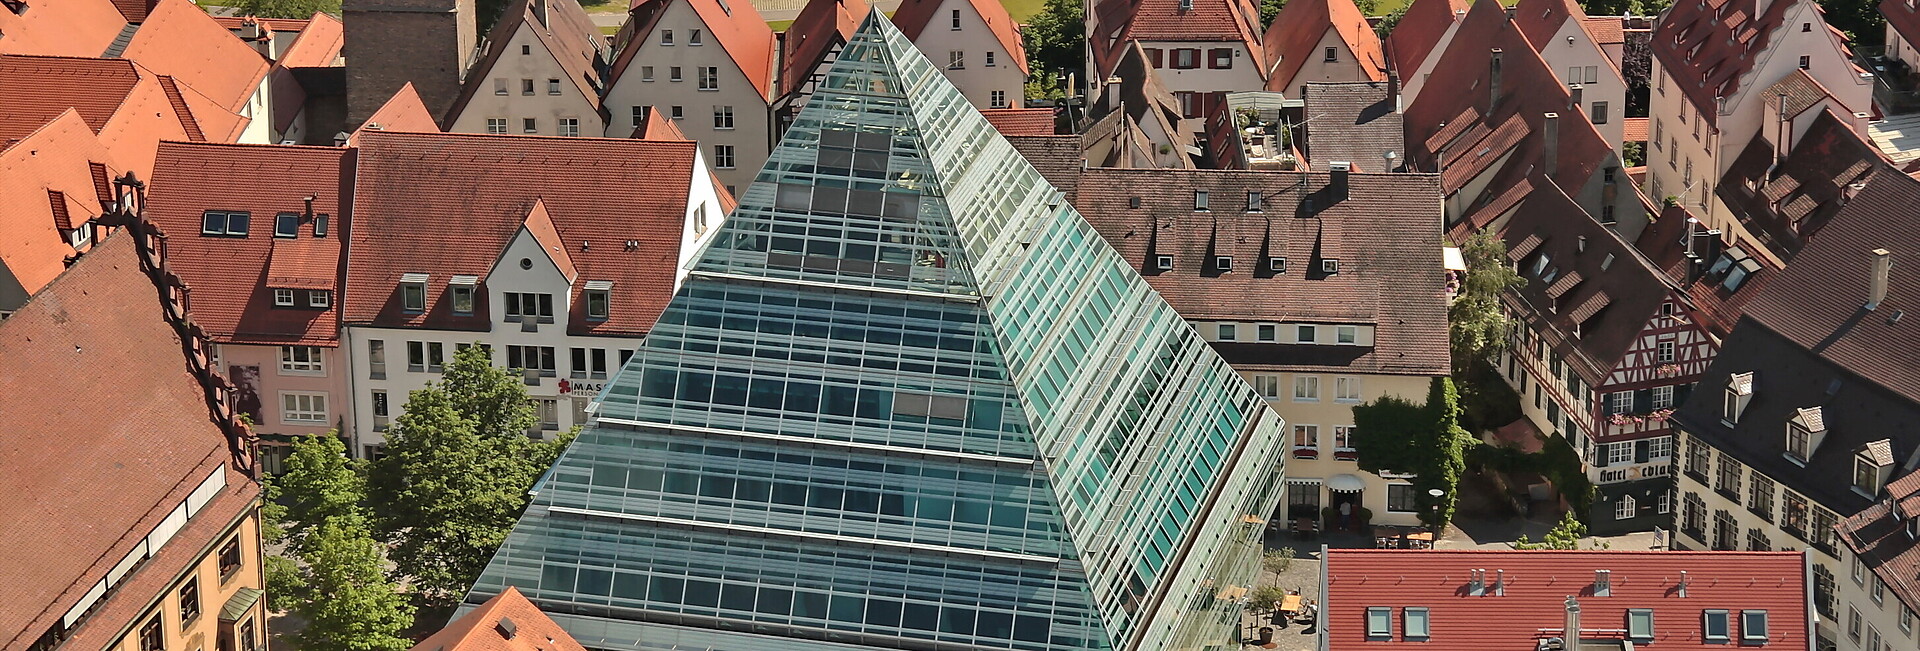 Blick von oben auf die Glaspyramide/Zentralbibliothek Ulm in der Stadtmitte, entworfen von dem Architekten Gottfried Böhm, Köln